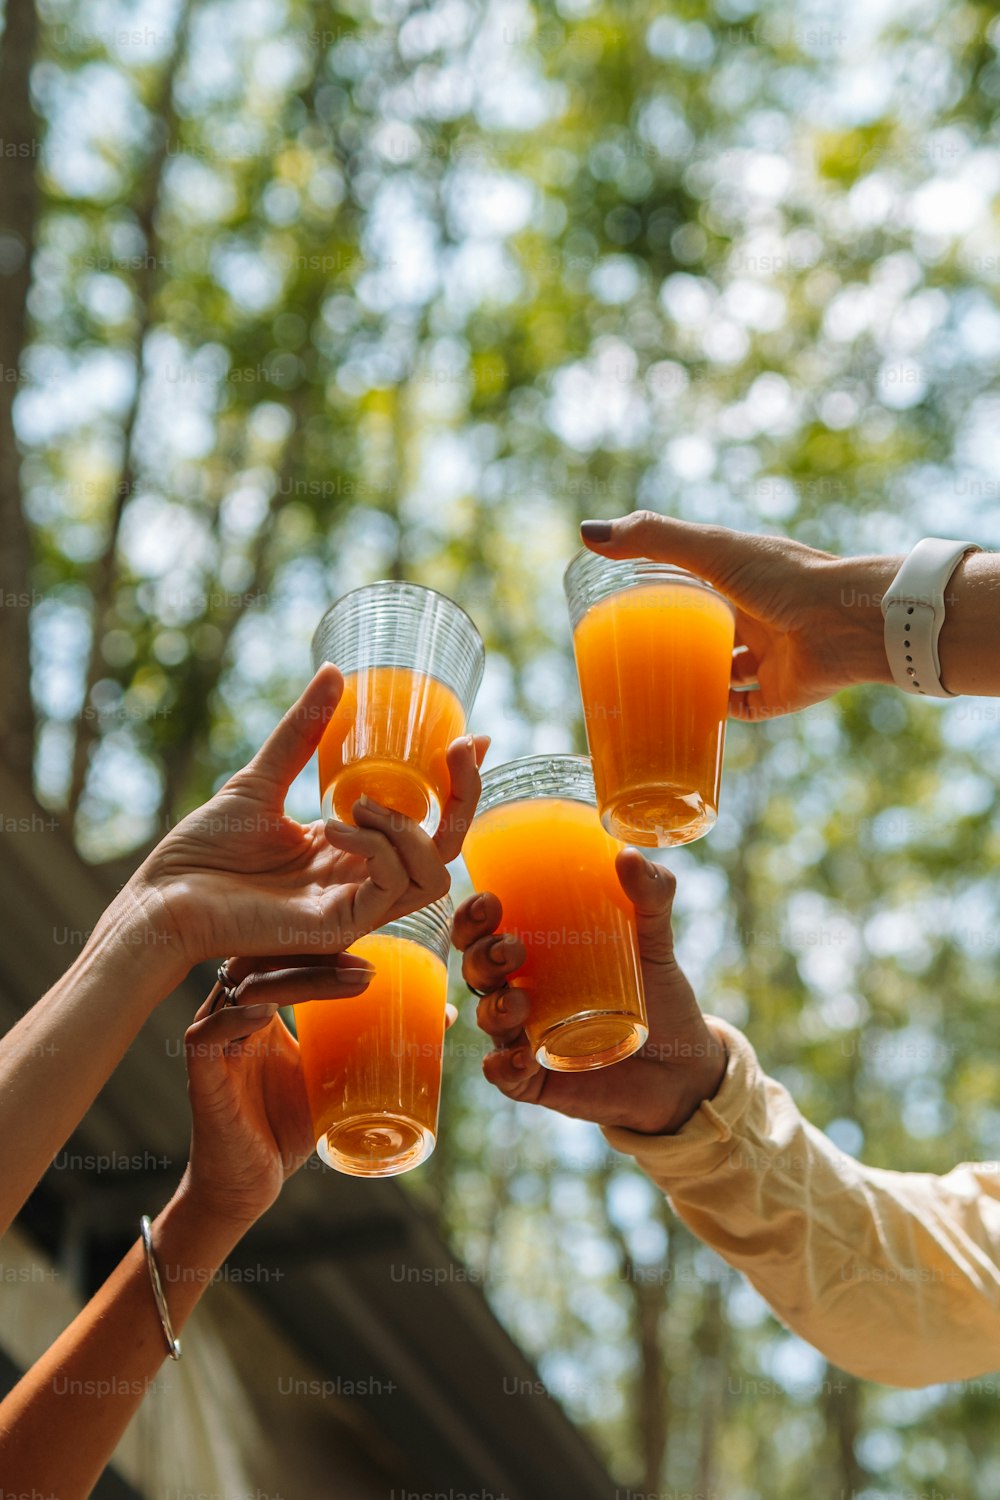 Un grupo de personas sosteniendo vasos de jugo de naranja